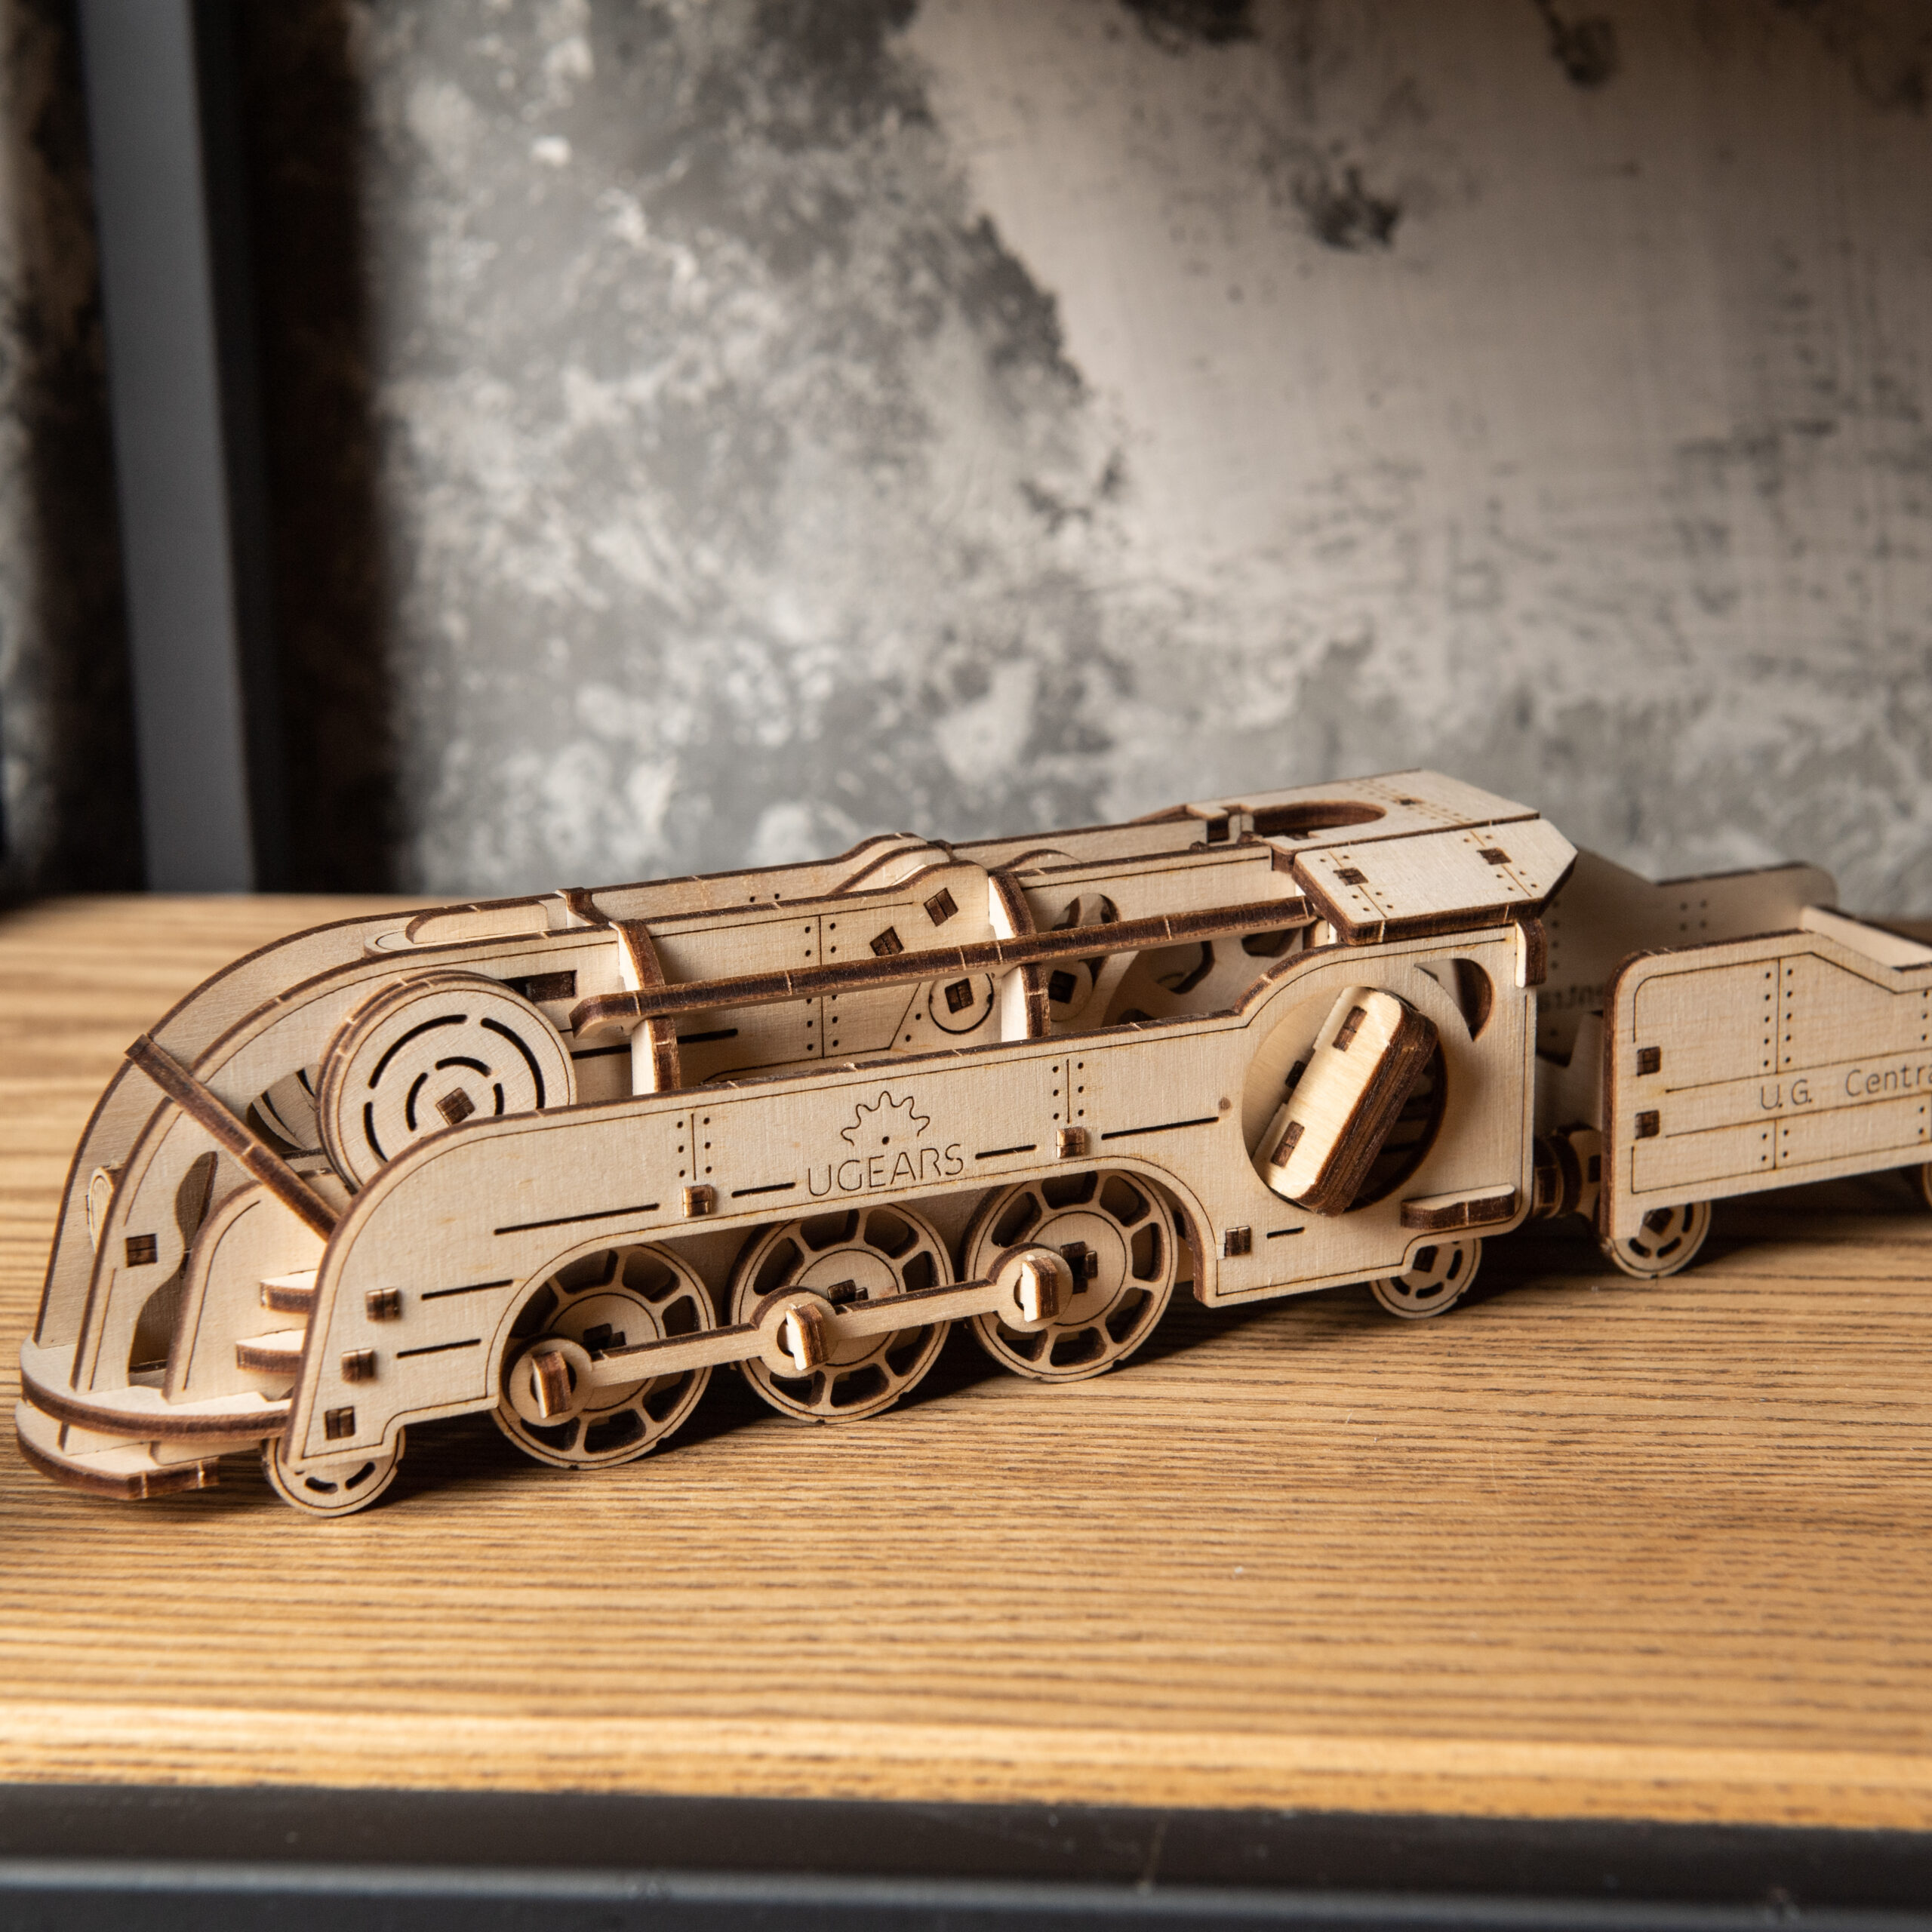 Maquette en Bois 3D Mécanique à Construire, Puzzle Train